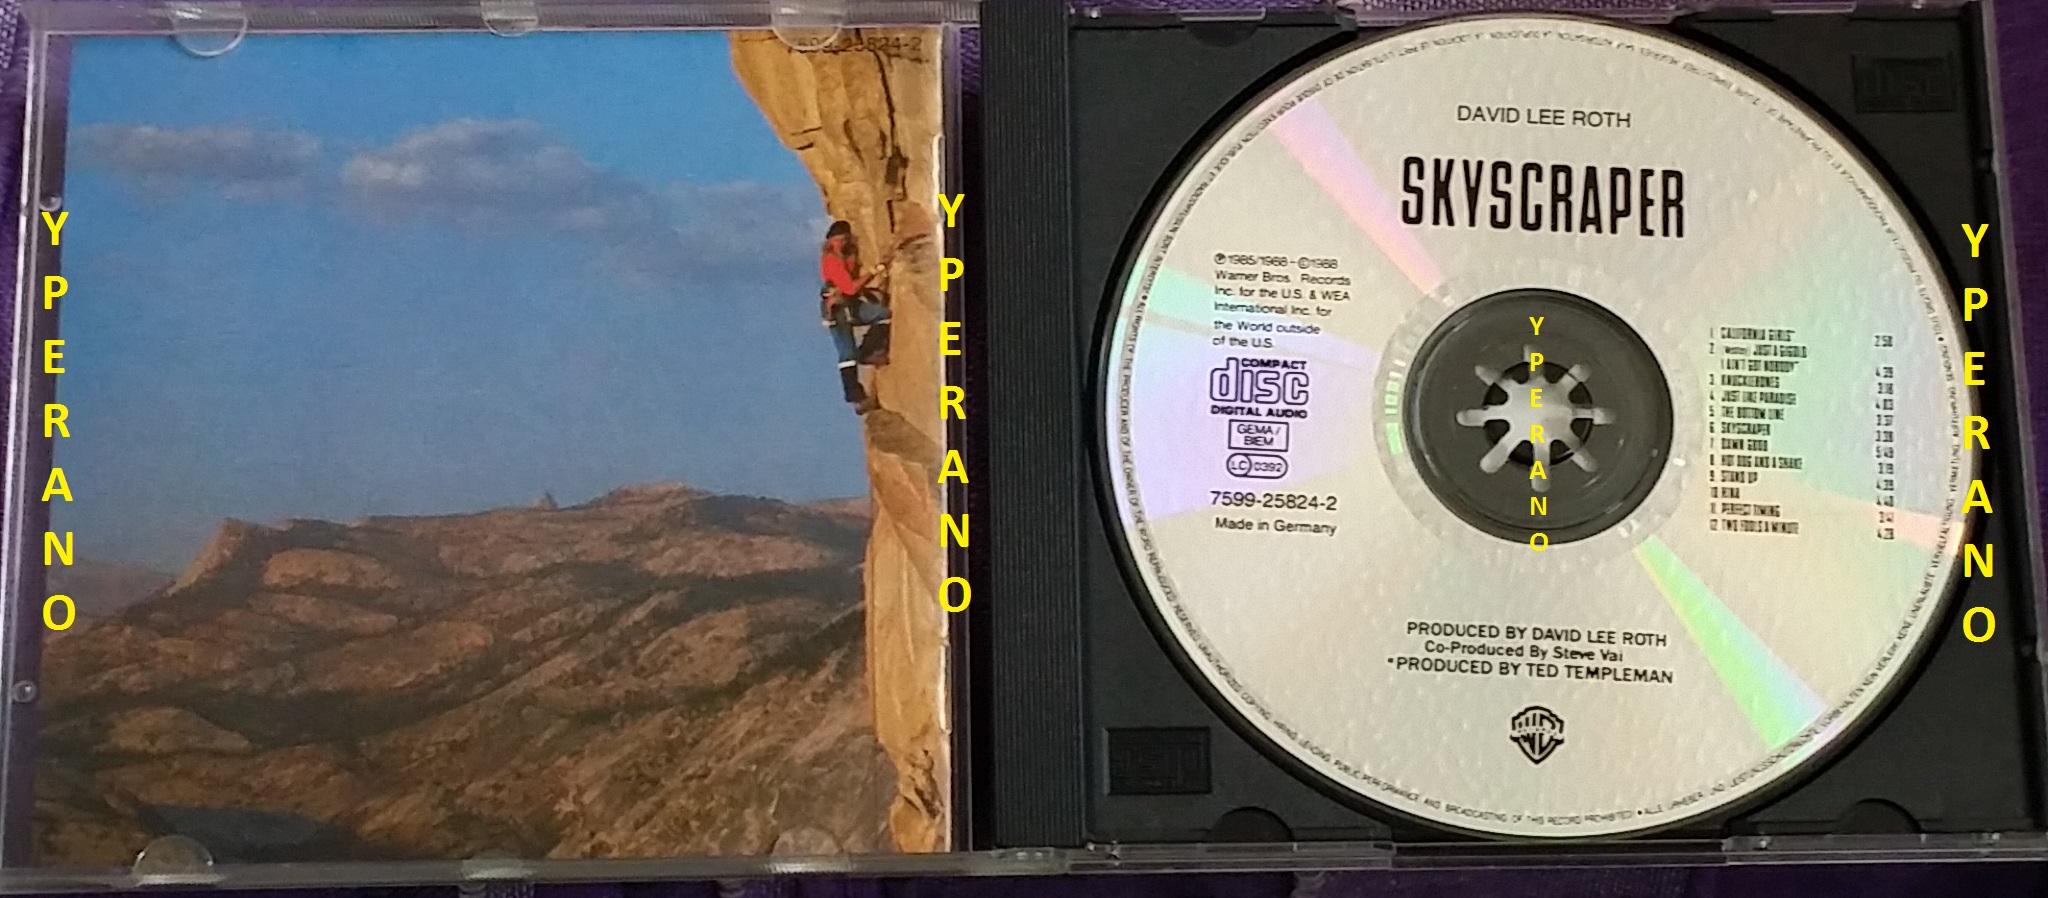 DAVID LEE ROTH: Skyscraper CD + Crazy from the Heat EP. Van Halen 